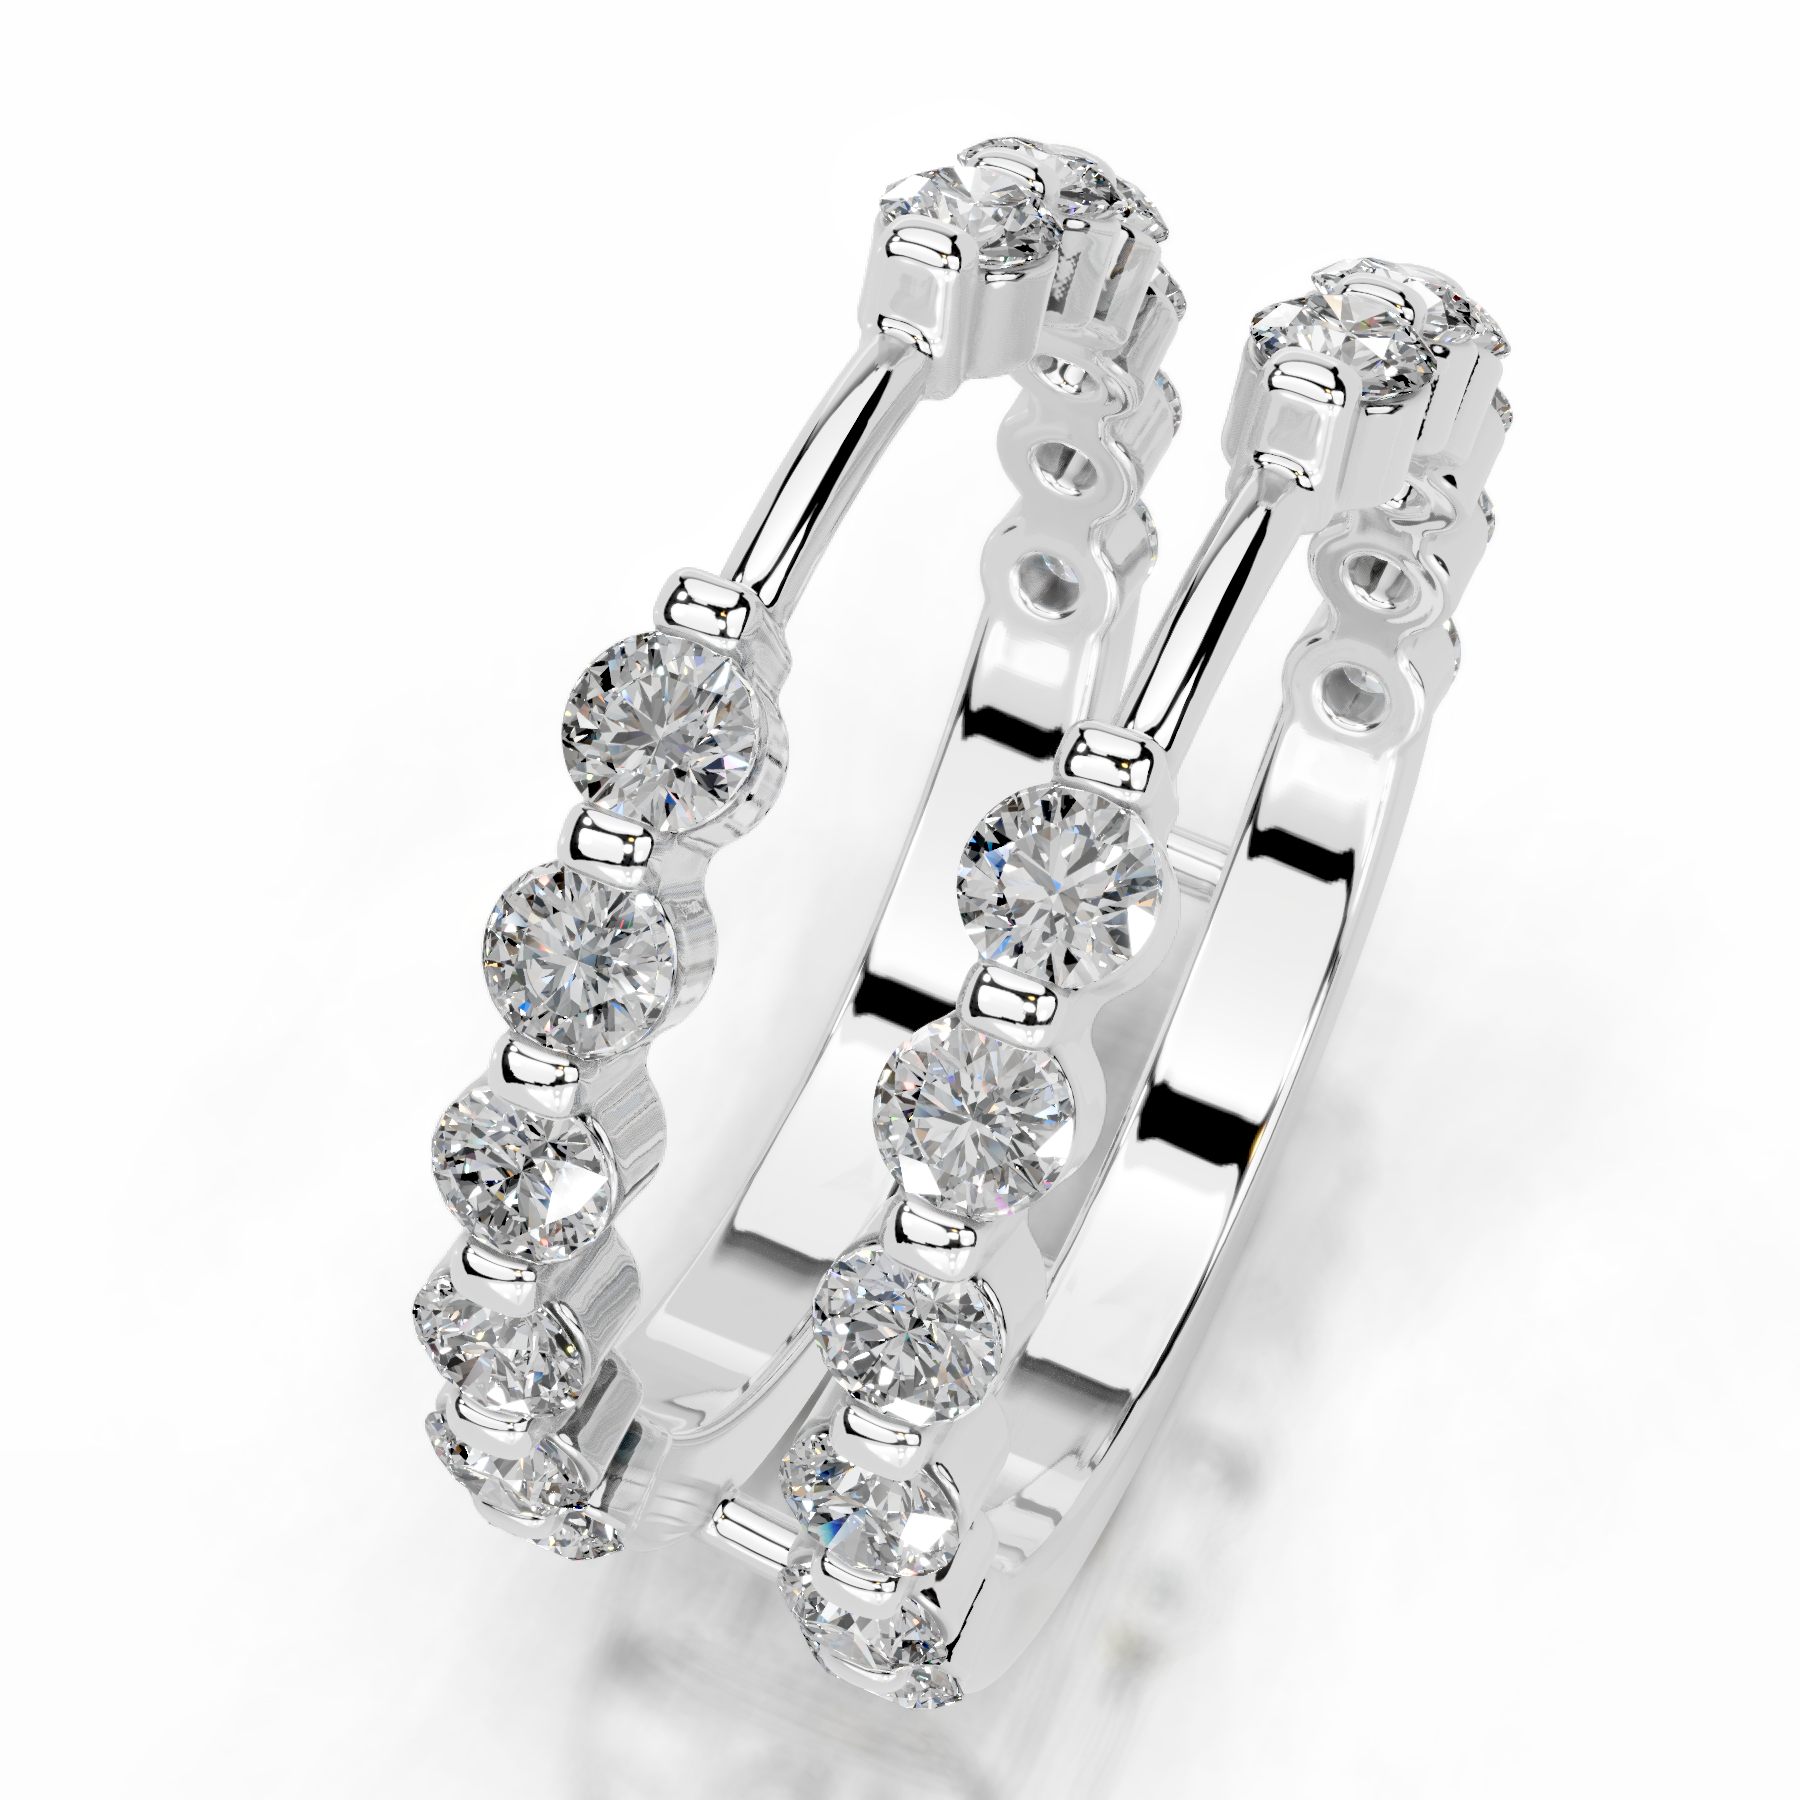 Ashley Lab Grown Diamond Wedding Ring   (1.25 Carat) -14K White Gold